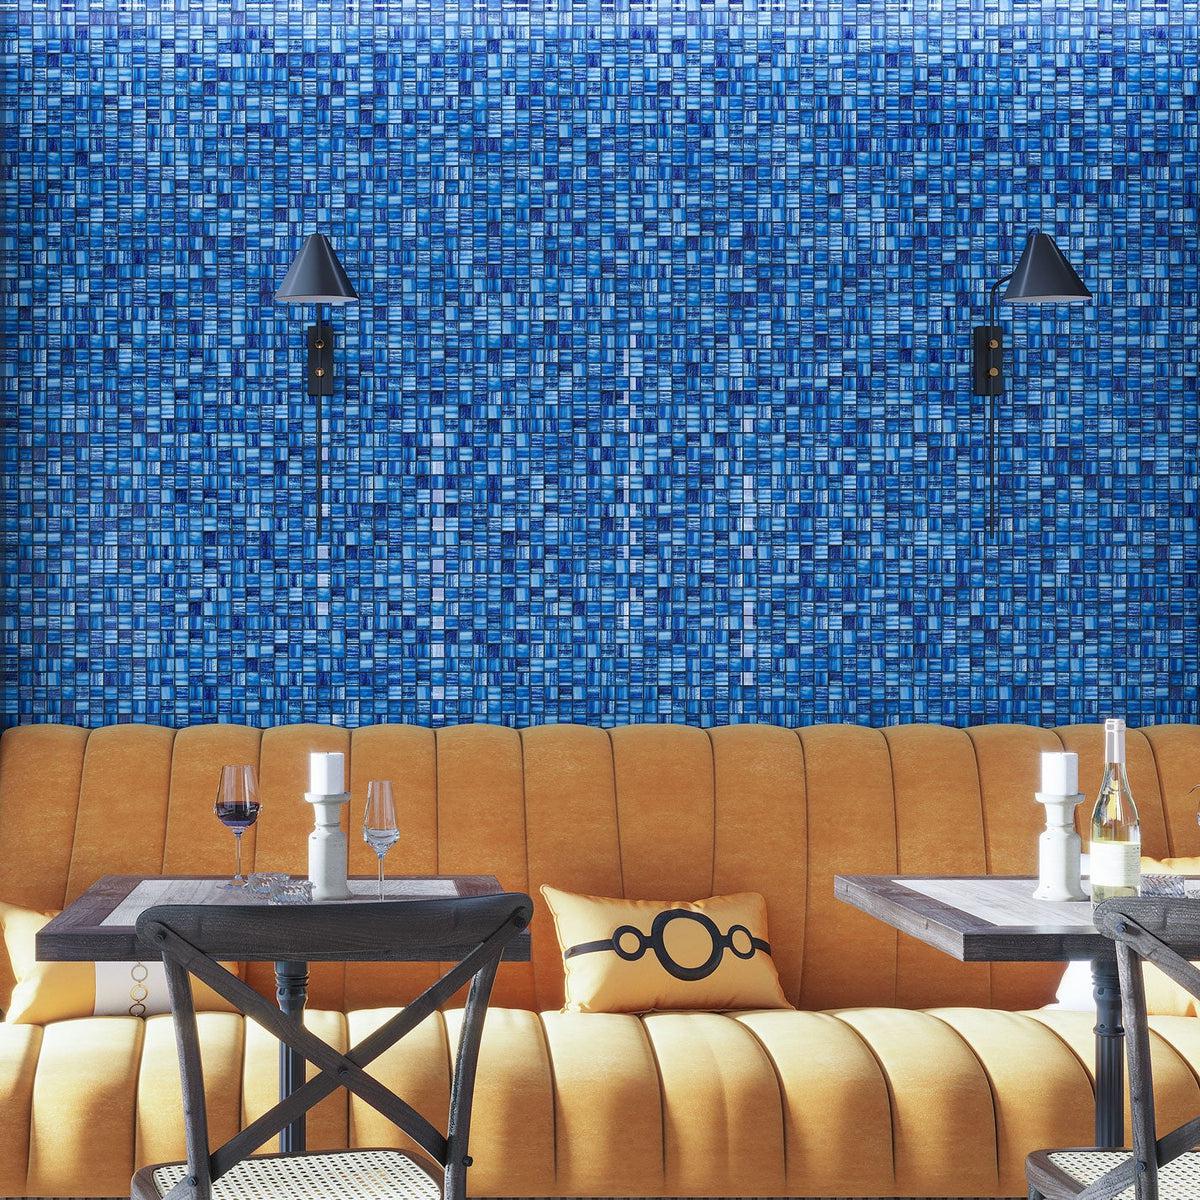 Blue glass tile wall backsplash in trendy cafe